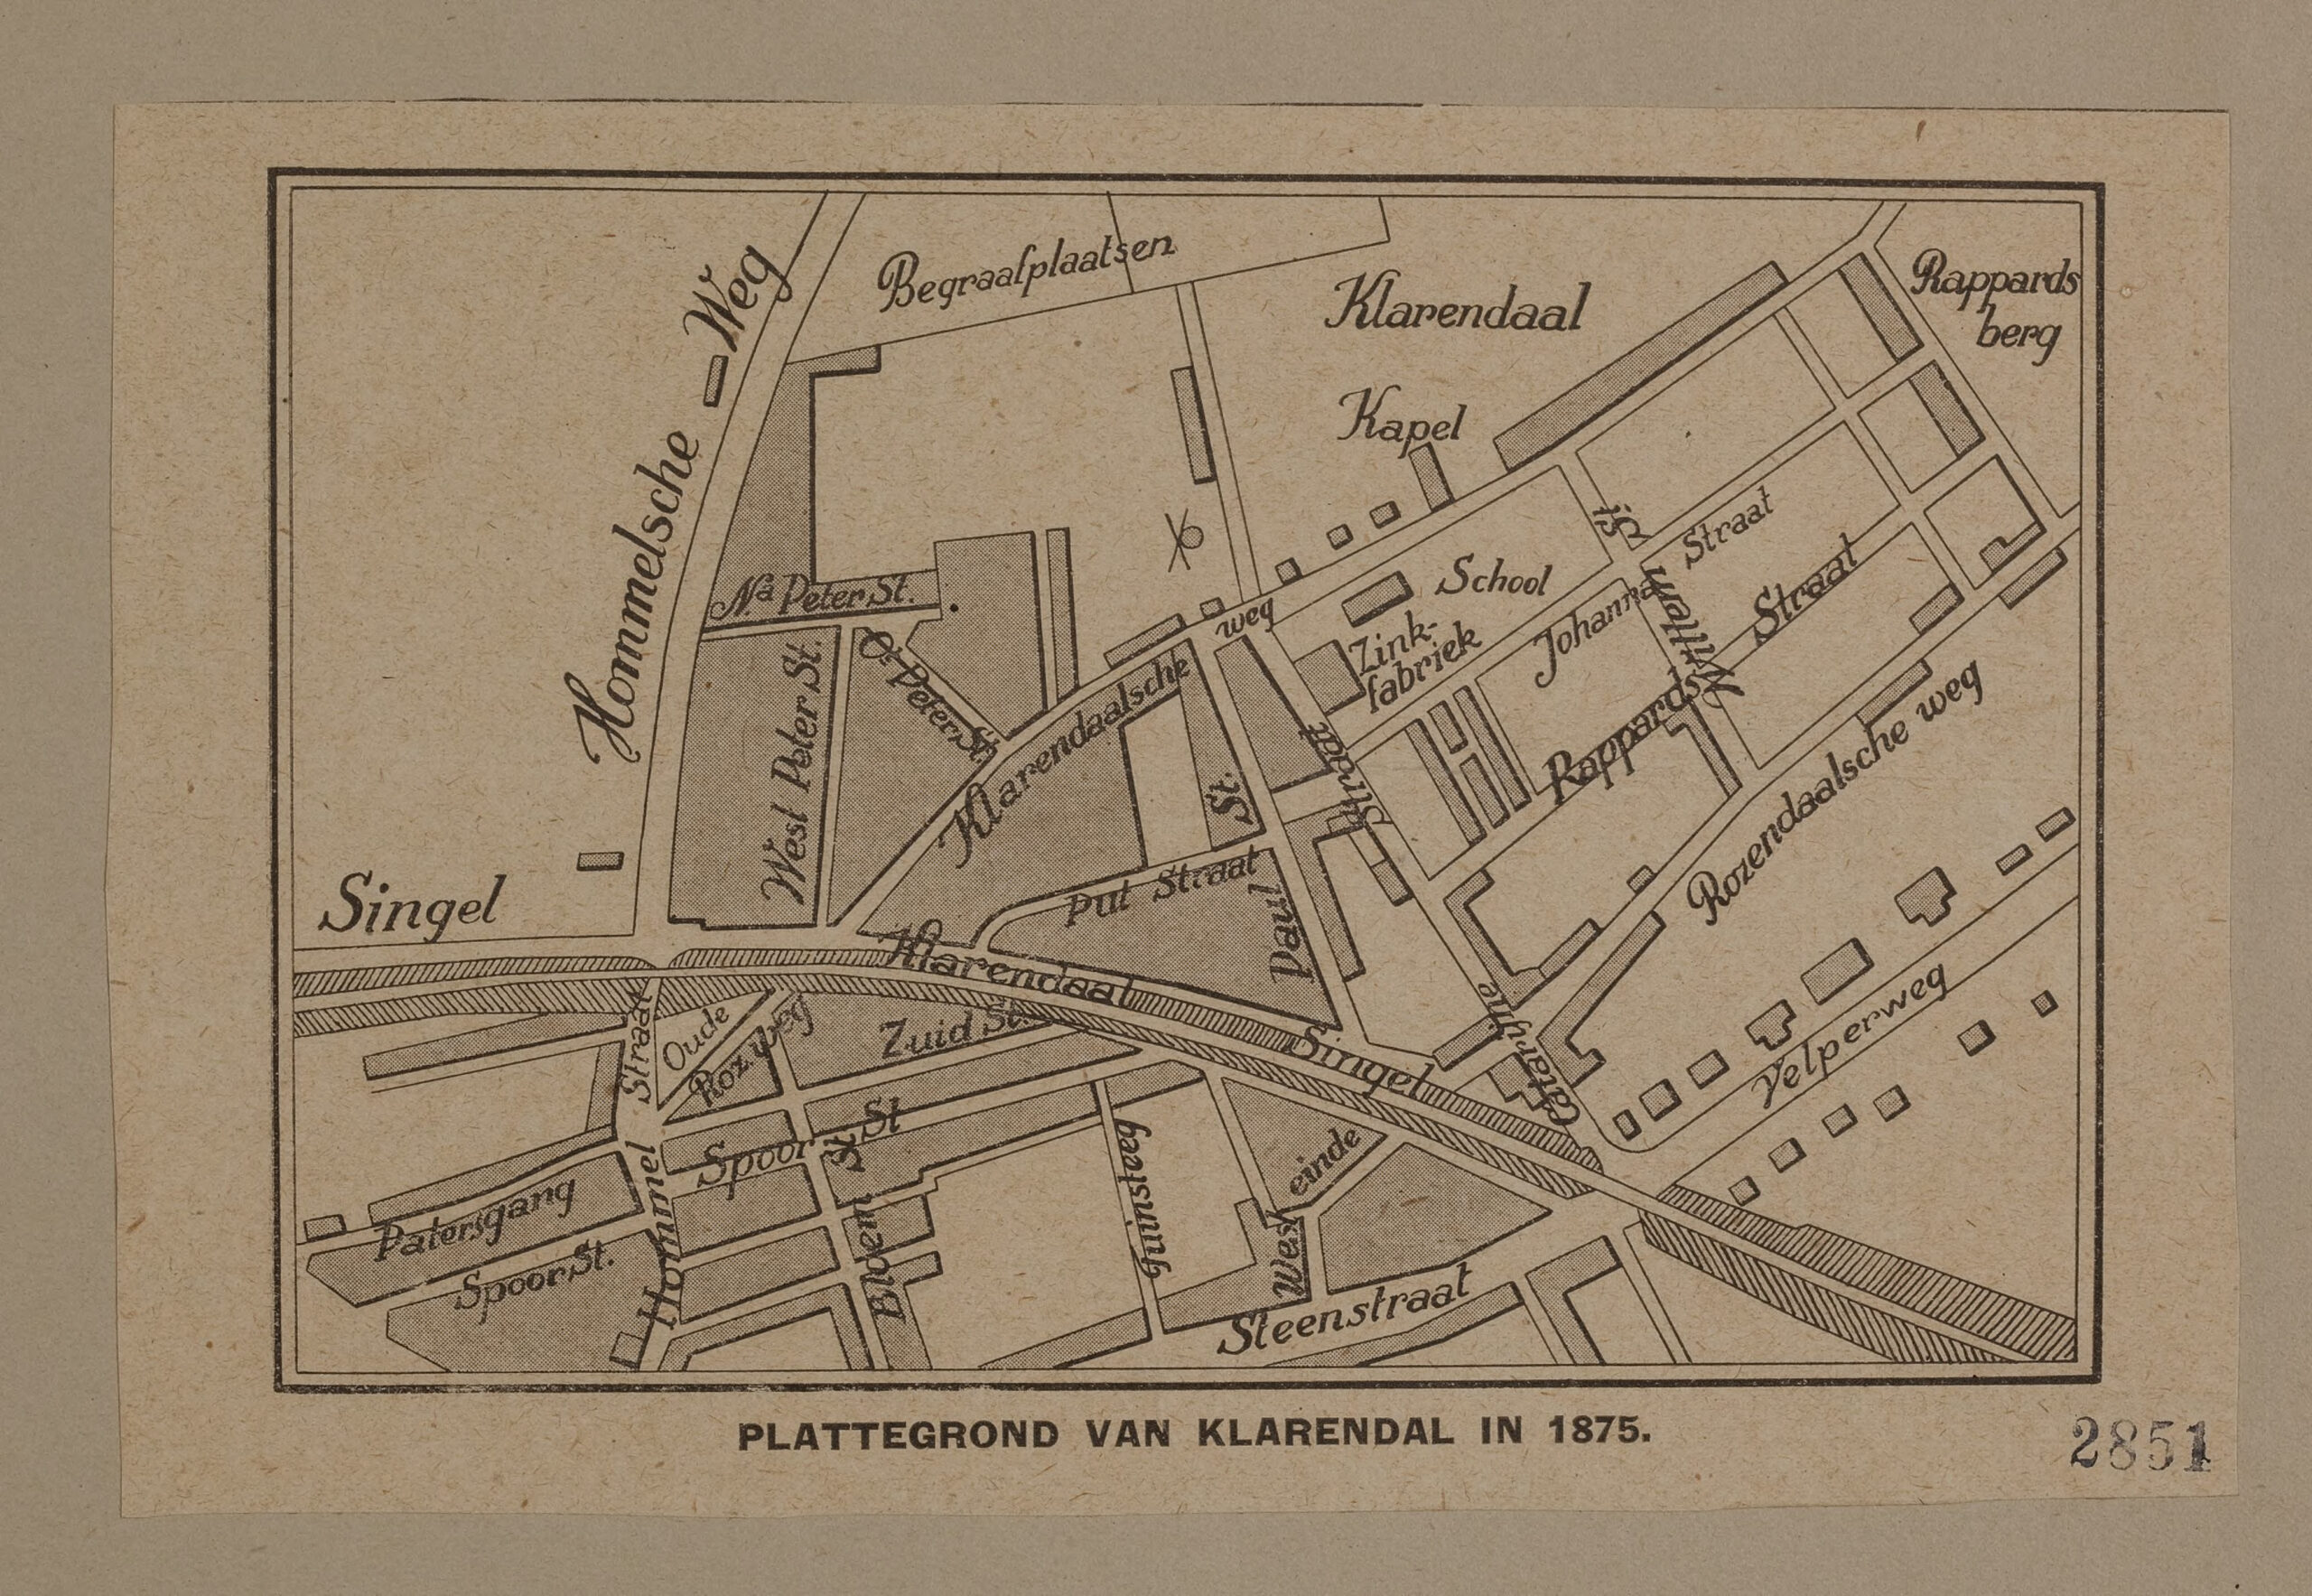 Plattegrond van Klarendal in 1875